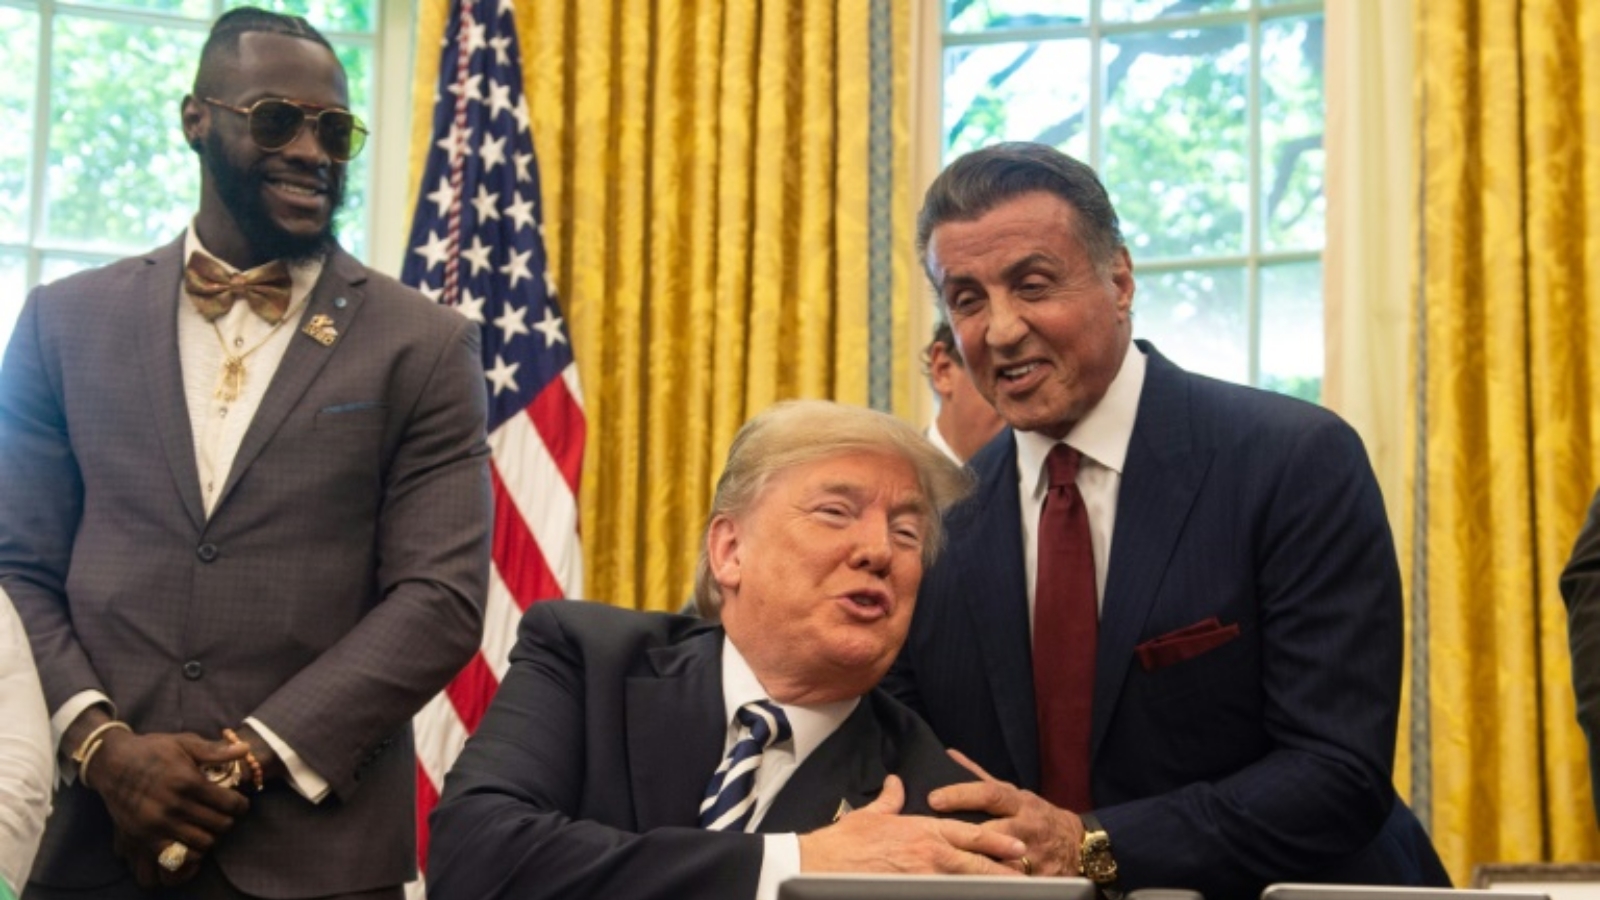 الرئيس الأميركي دونالد ترامب محاطاً بالممثل سيلفستر ستالون (يمين) والملاكم لينوكس بويس في البيت الأبيض. بتاريخ 24 أيار/ مايو 2018.